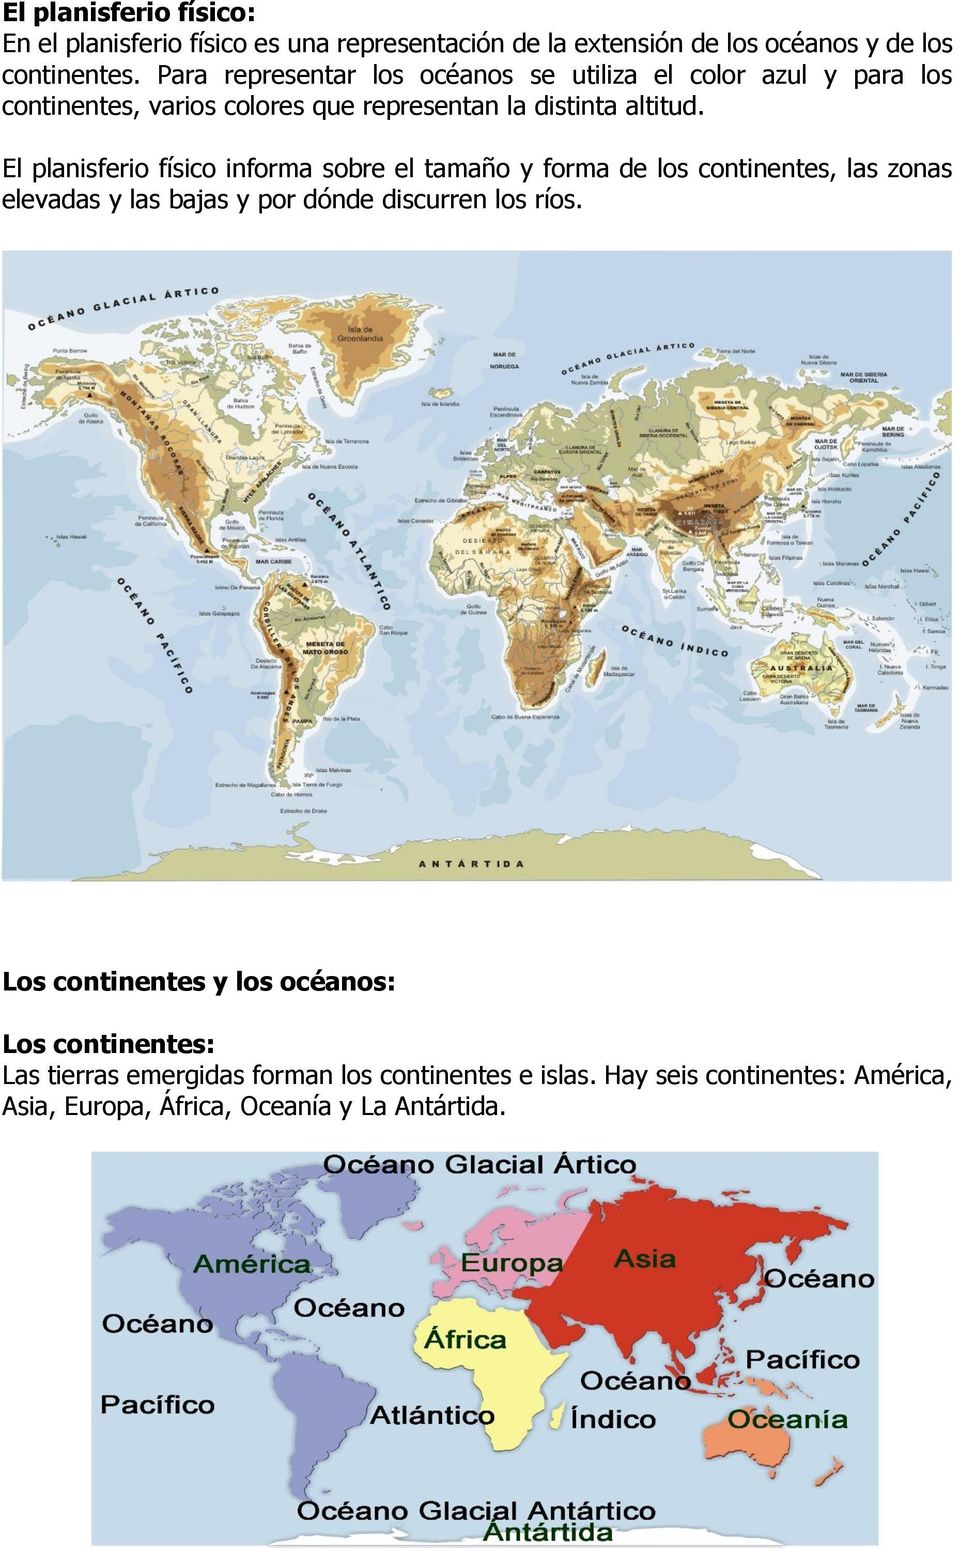 El planisferio físico informa sobre el tamaño y forma de los continentes, las zonas elevadas y las bajas y por dónde discurren los ríos.